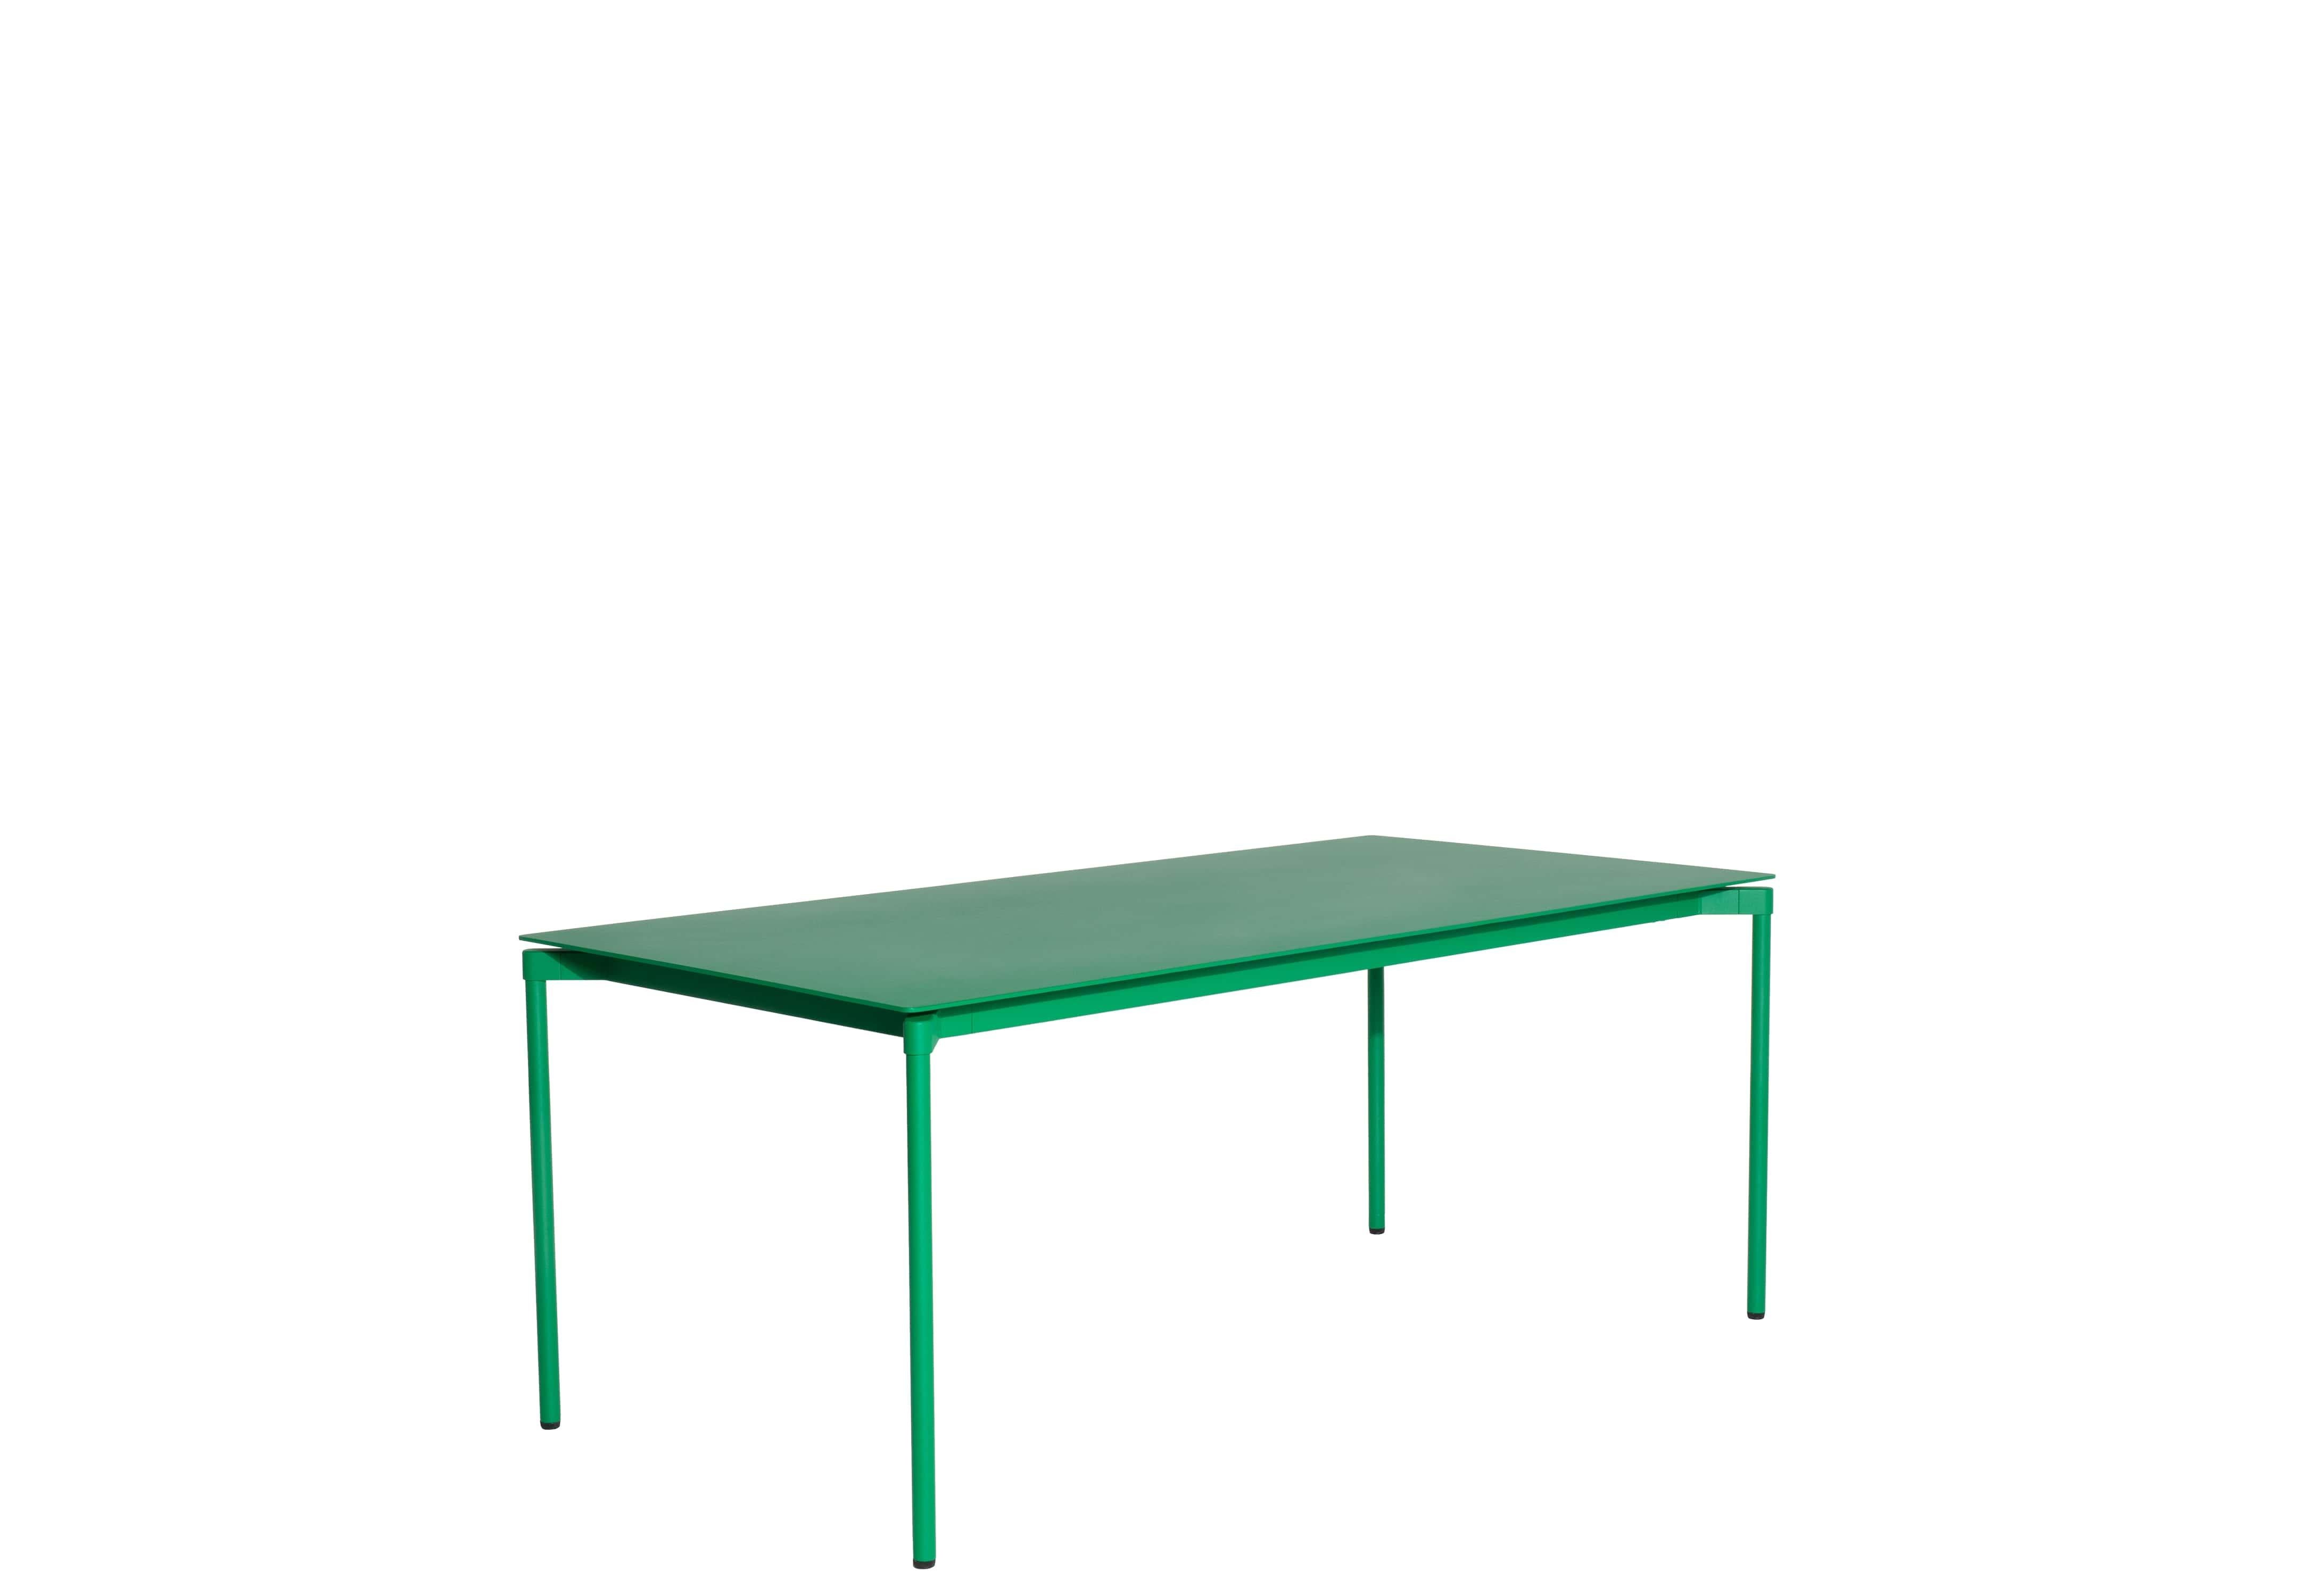 Petite Friture Fromme Table rectangulaire en aluminium vert menthe par Tom Chung, 2020

La collection S/One se distingue par sa ligne épurée et son design compact. Les absorbeurs placés sous les sièges leur confèrent une flexibilité souple et très